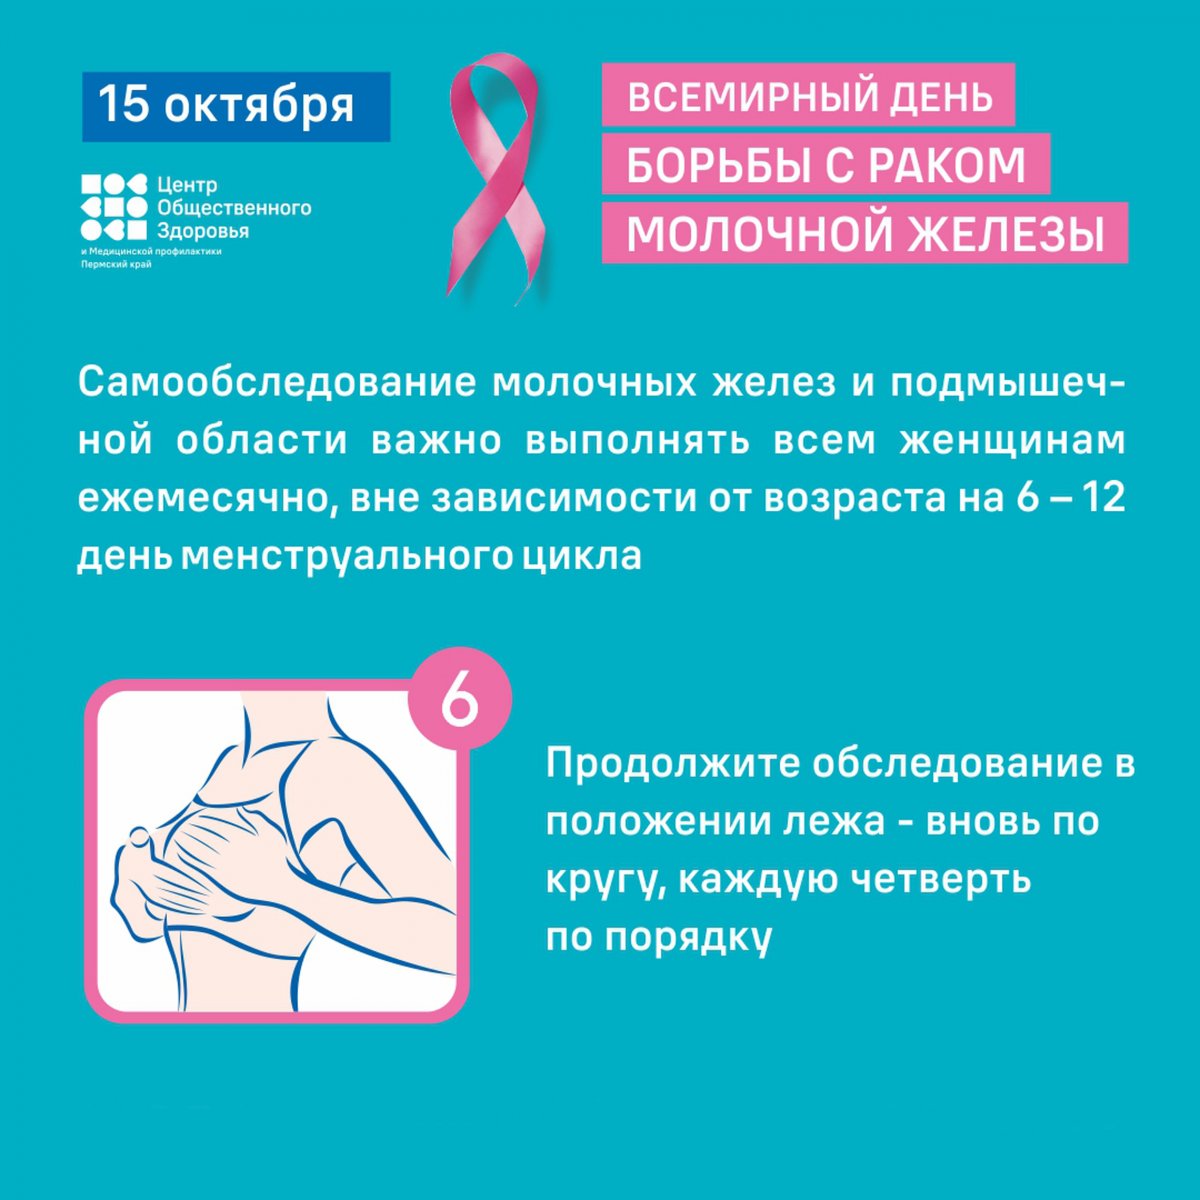 борьба с раком груди у женщин фото 113